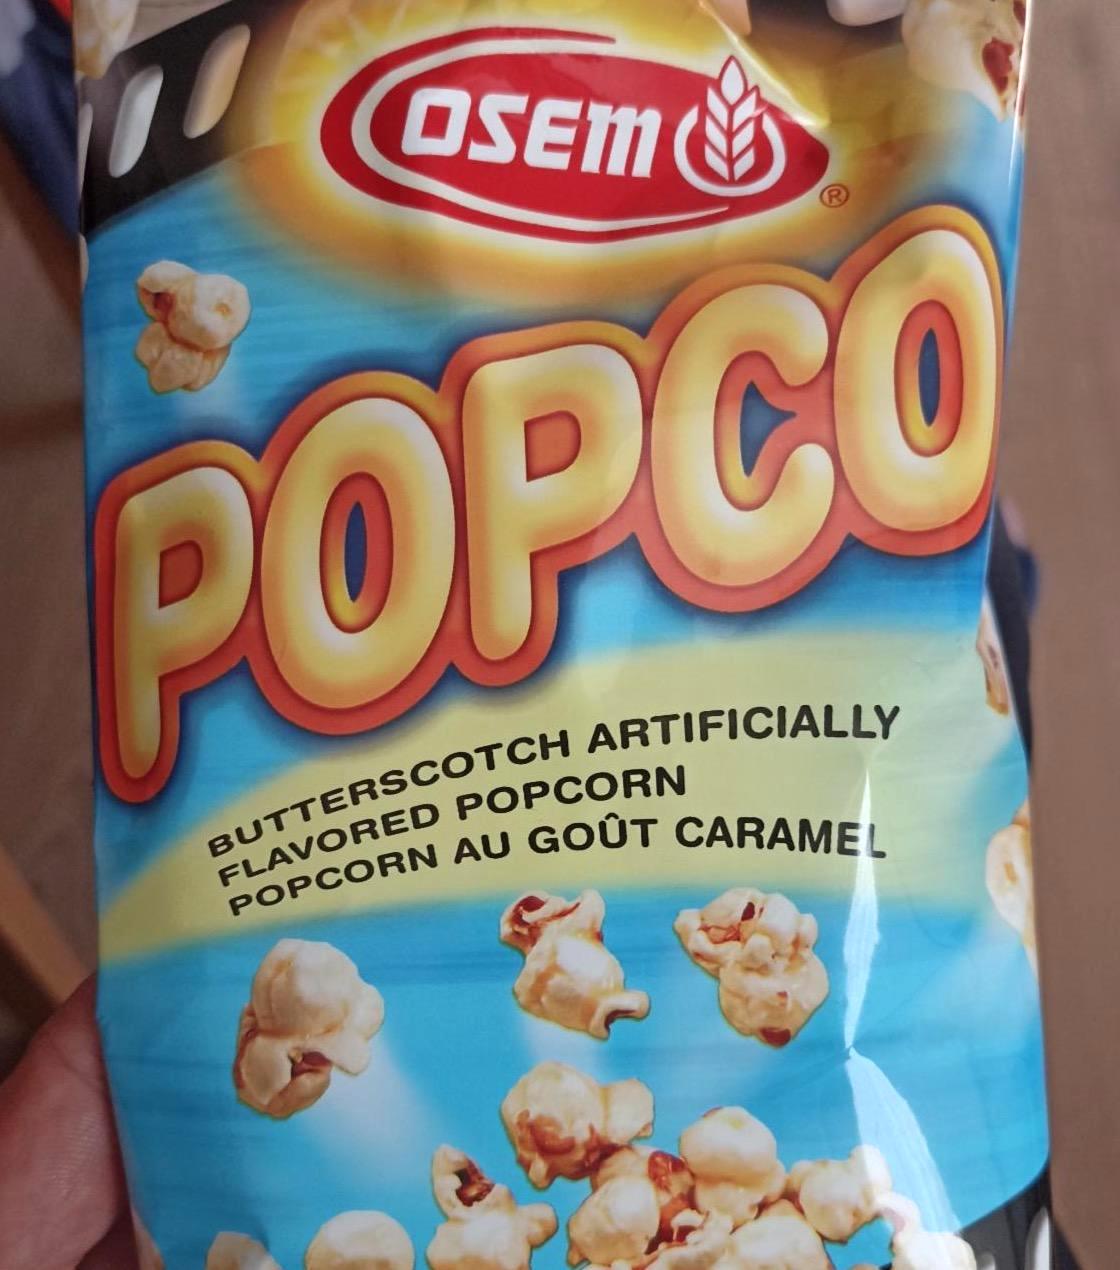 Képek - Popco Butterscotch flavored popcorn Osem